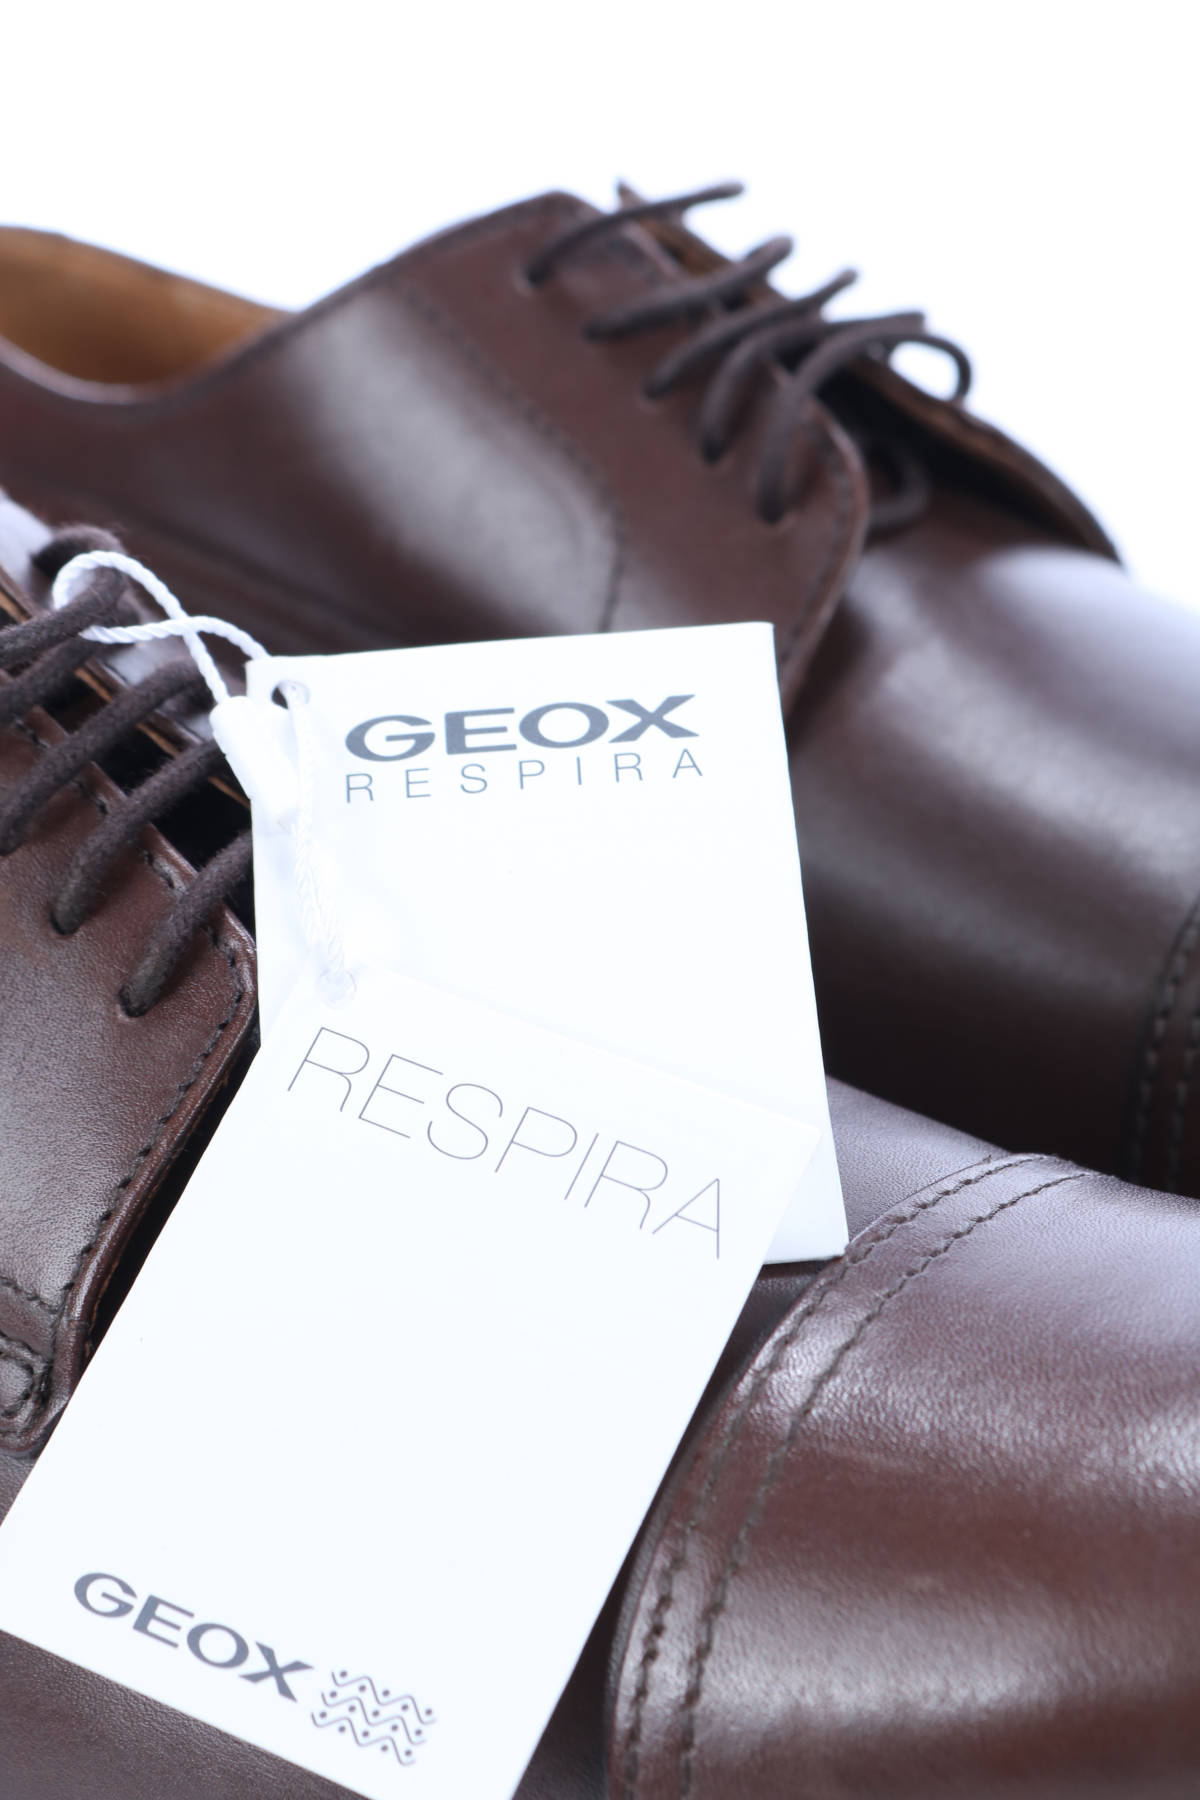 Официални обувки GEOX4